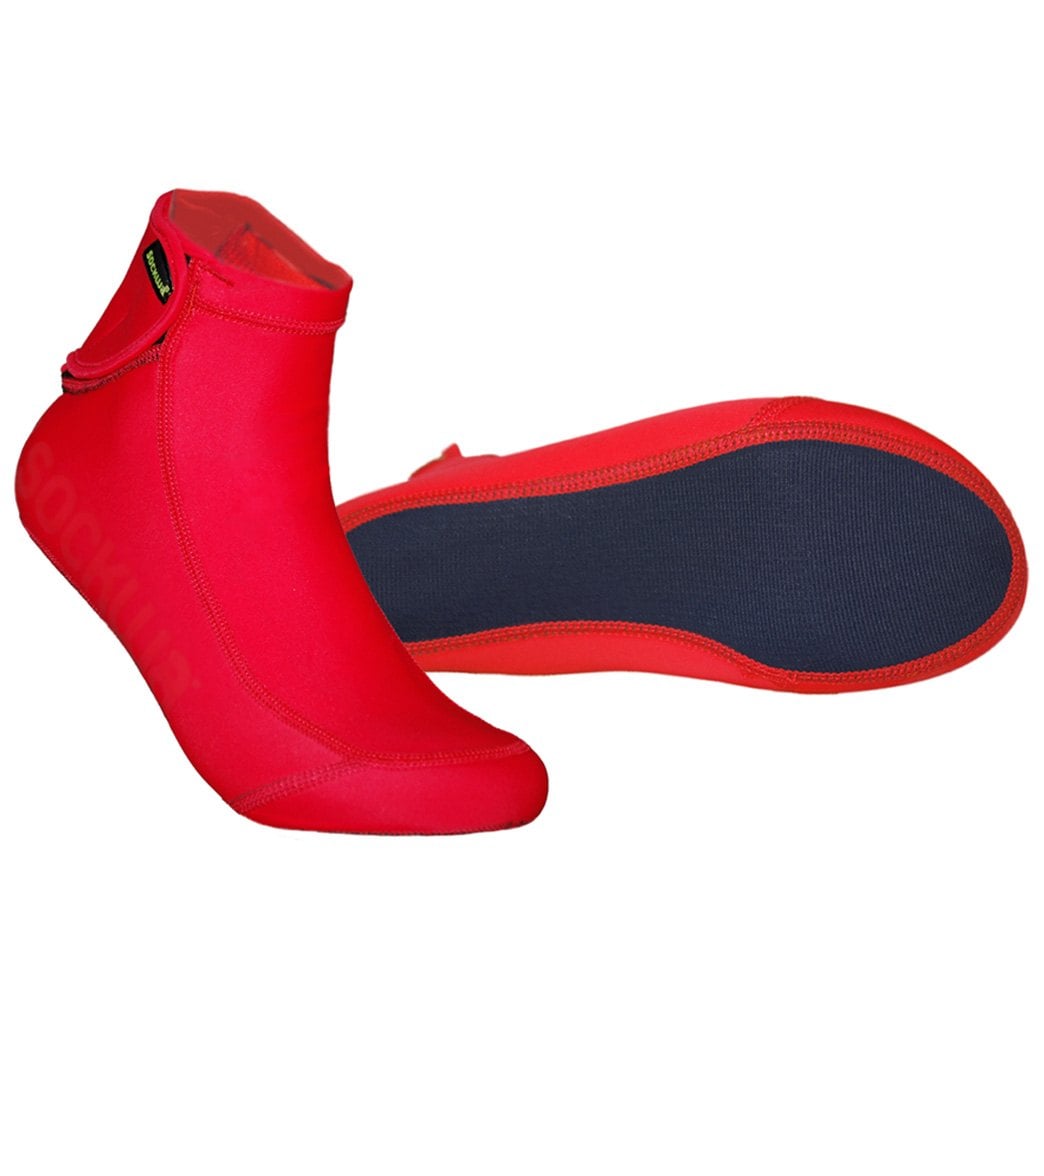 Sockwa Water Shoes Playa Hi Aqua Socks - Red W6/M5 - Swimoutlet.com